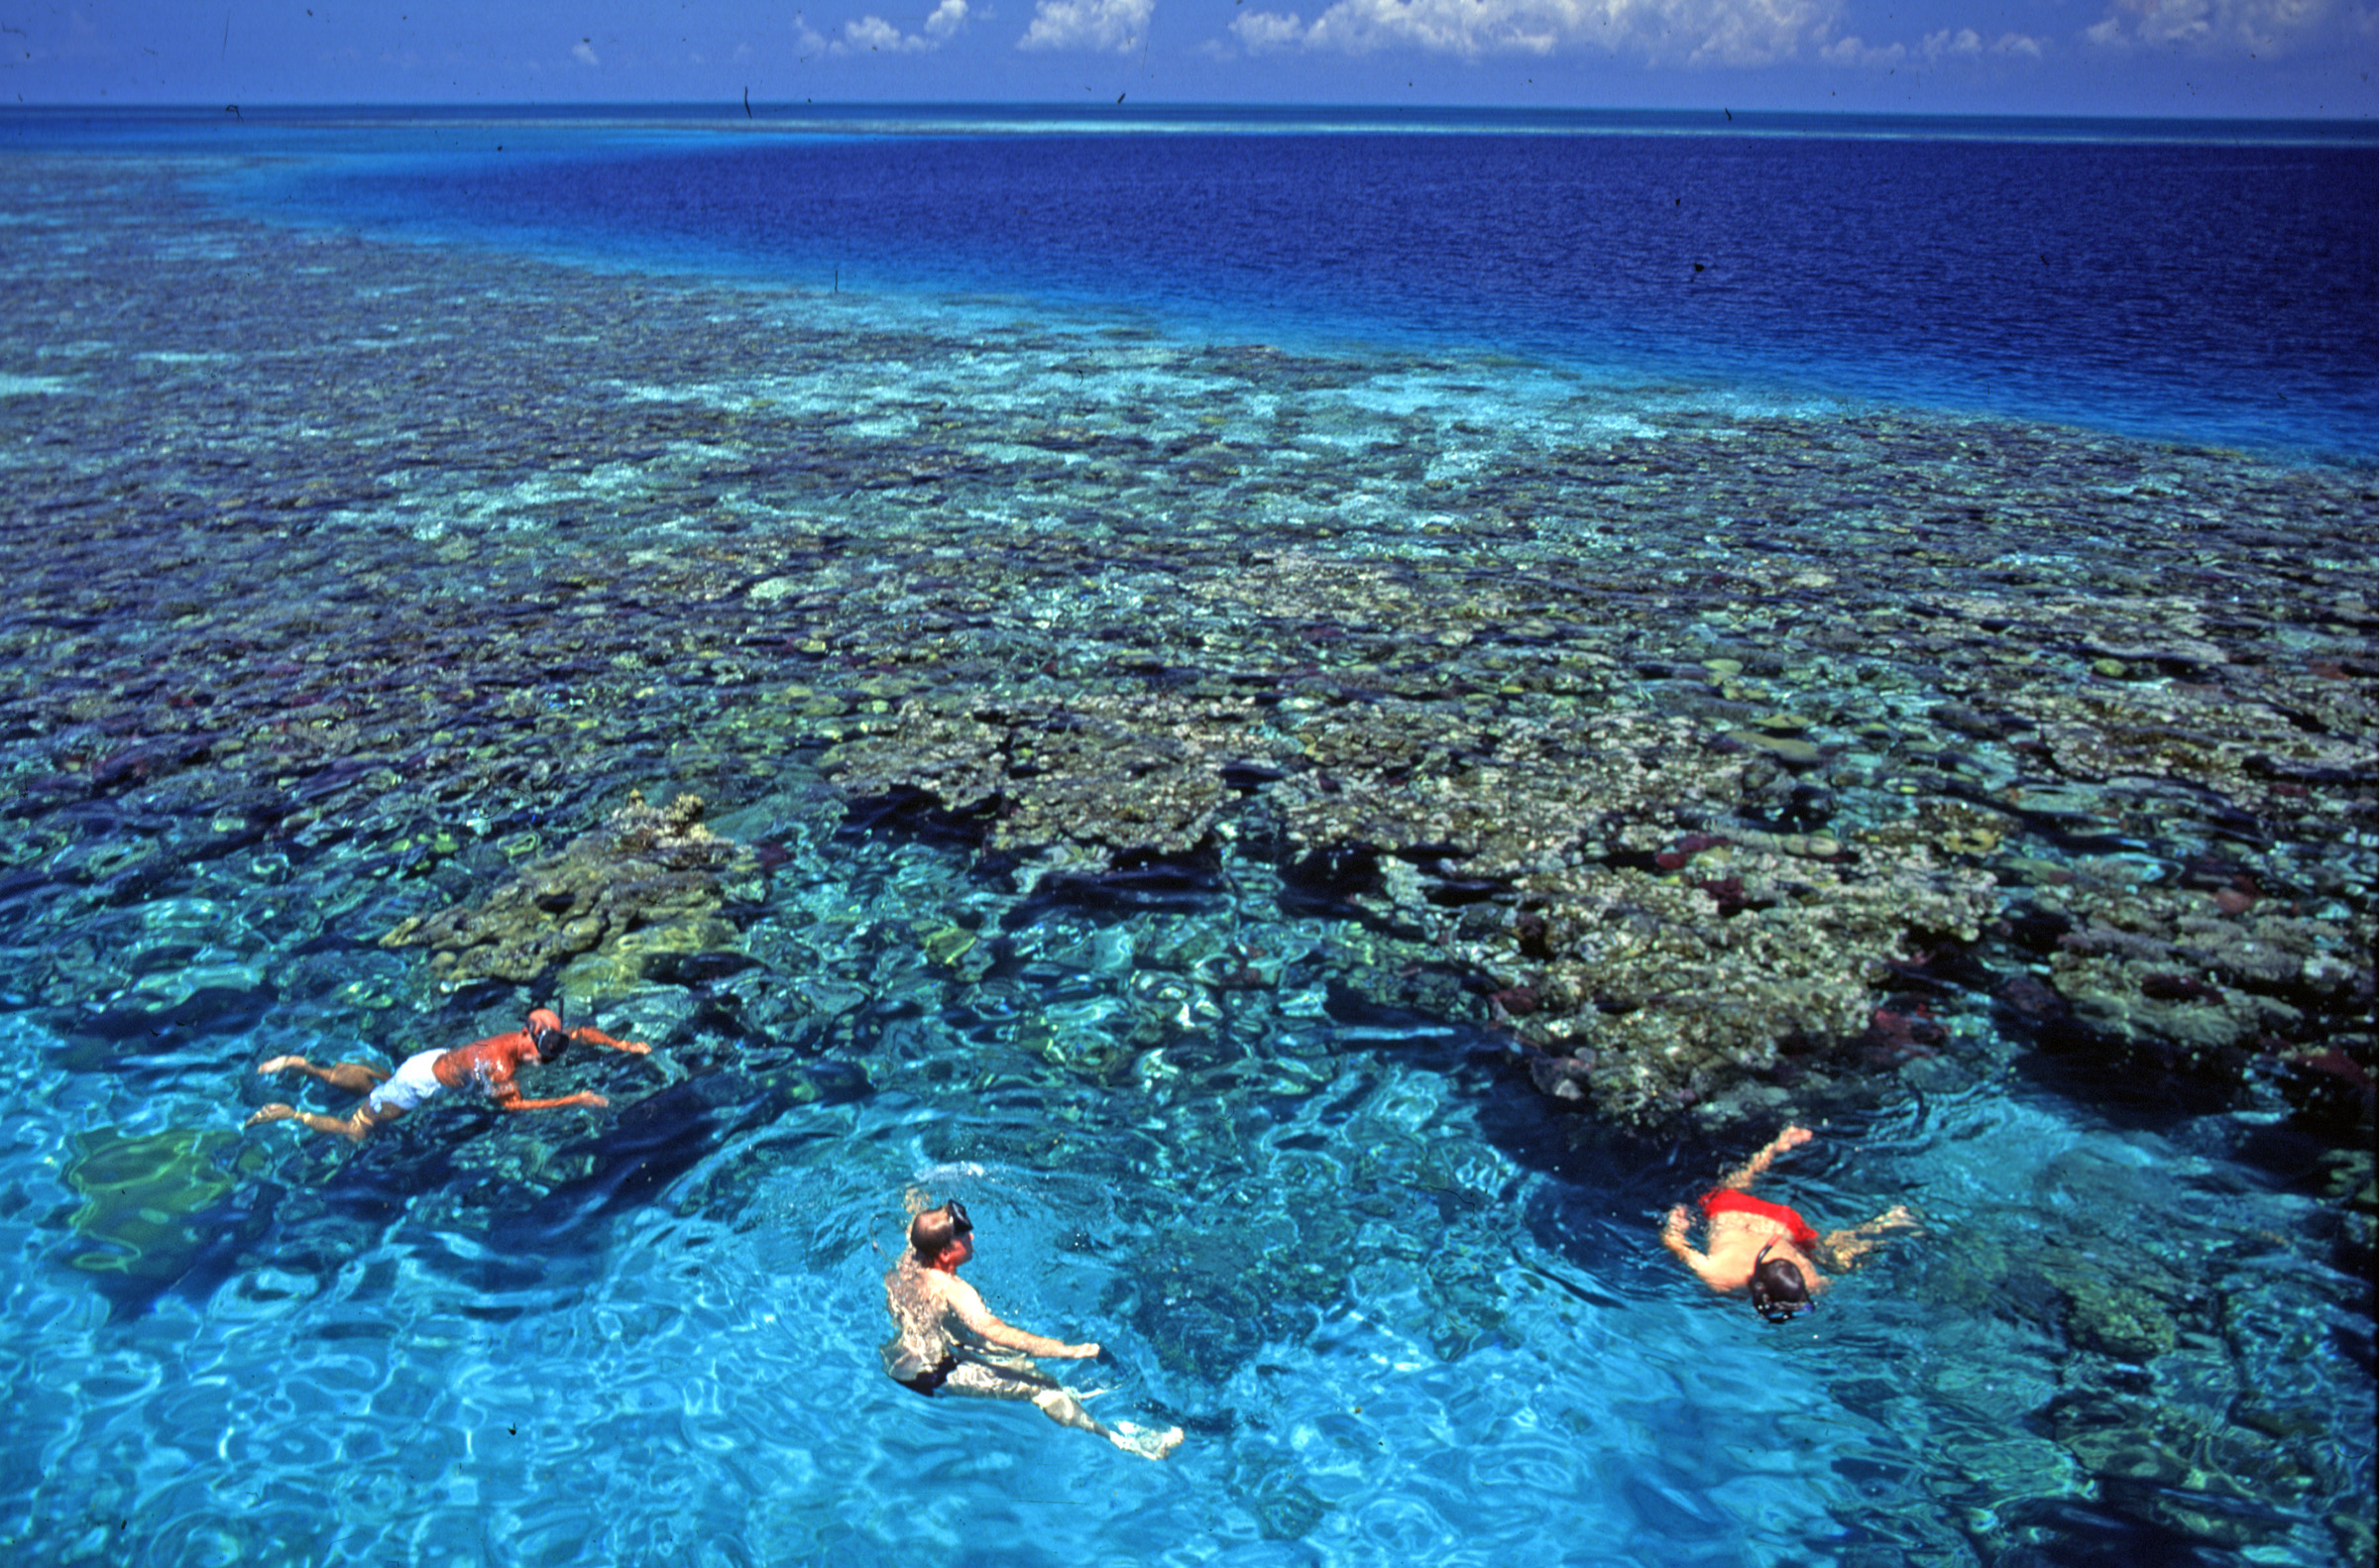 Belize Barrier Reef Top Wallpaper Hd - Mesoamerican Barrier Reef Mexico - HD Wallpaper 